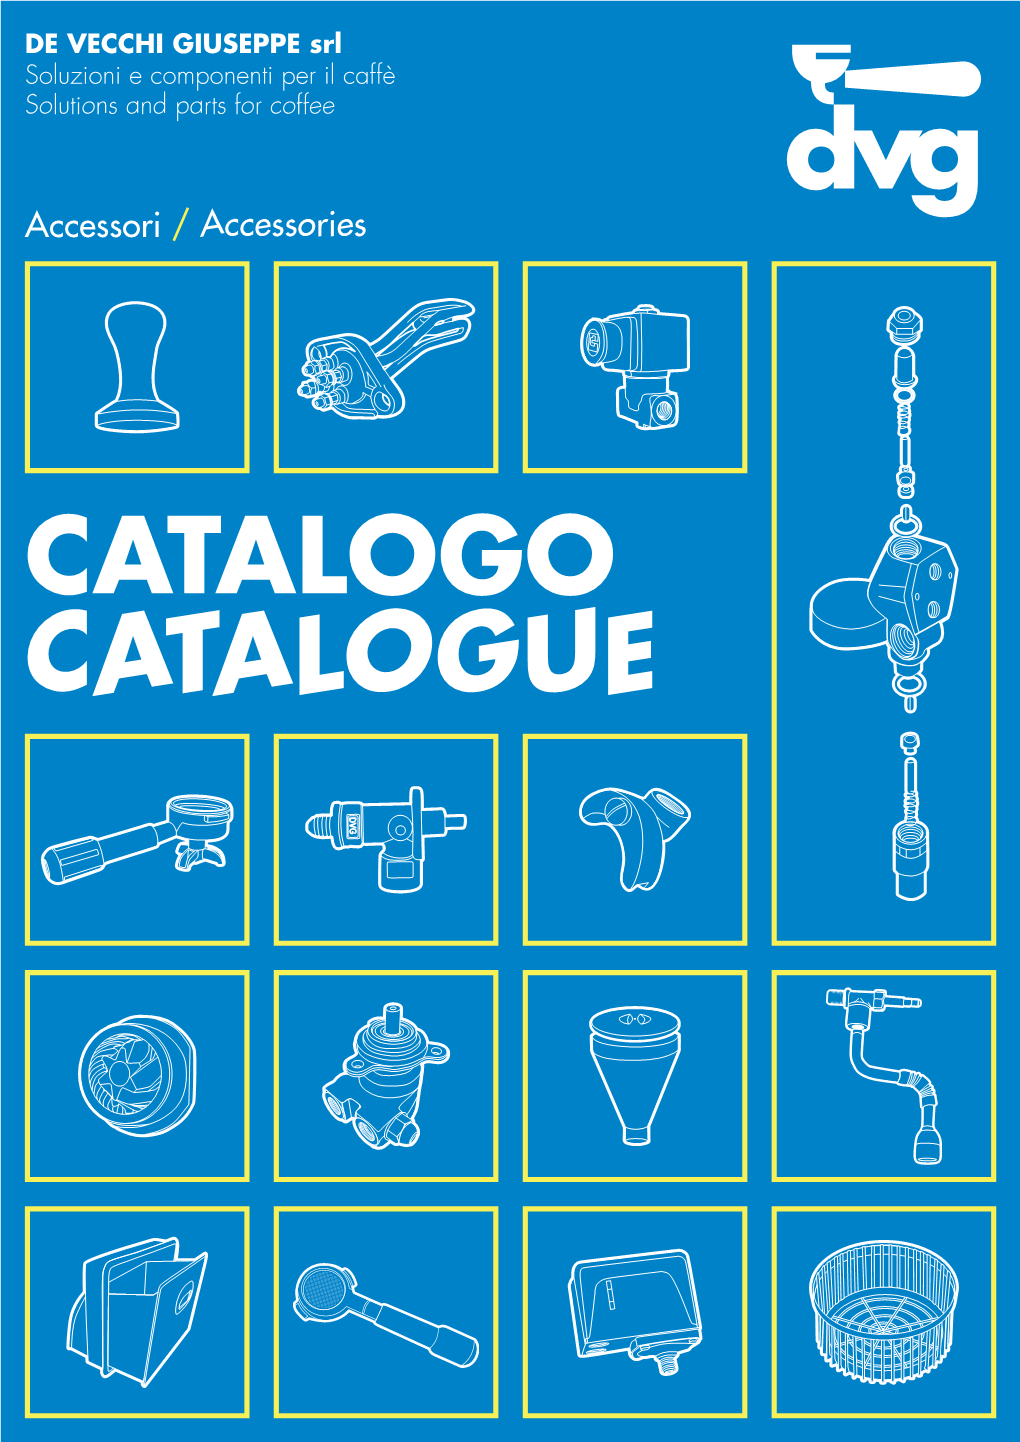 CATALOGO CATALOGUE Accessori Accessories